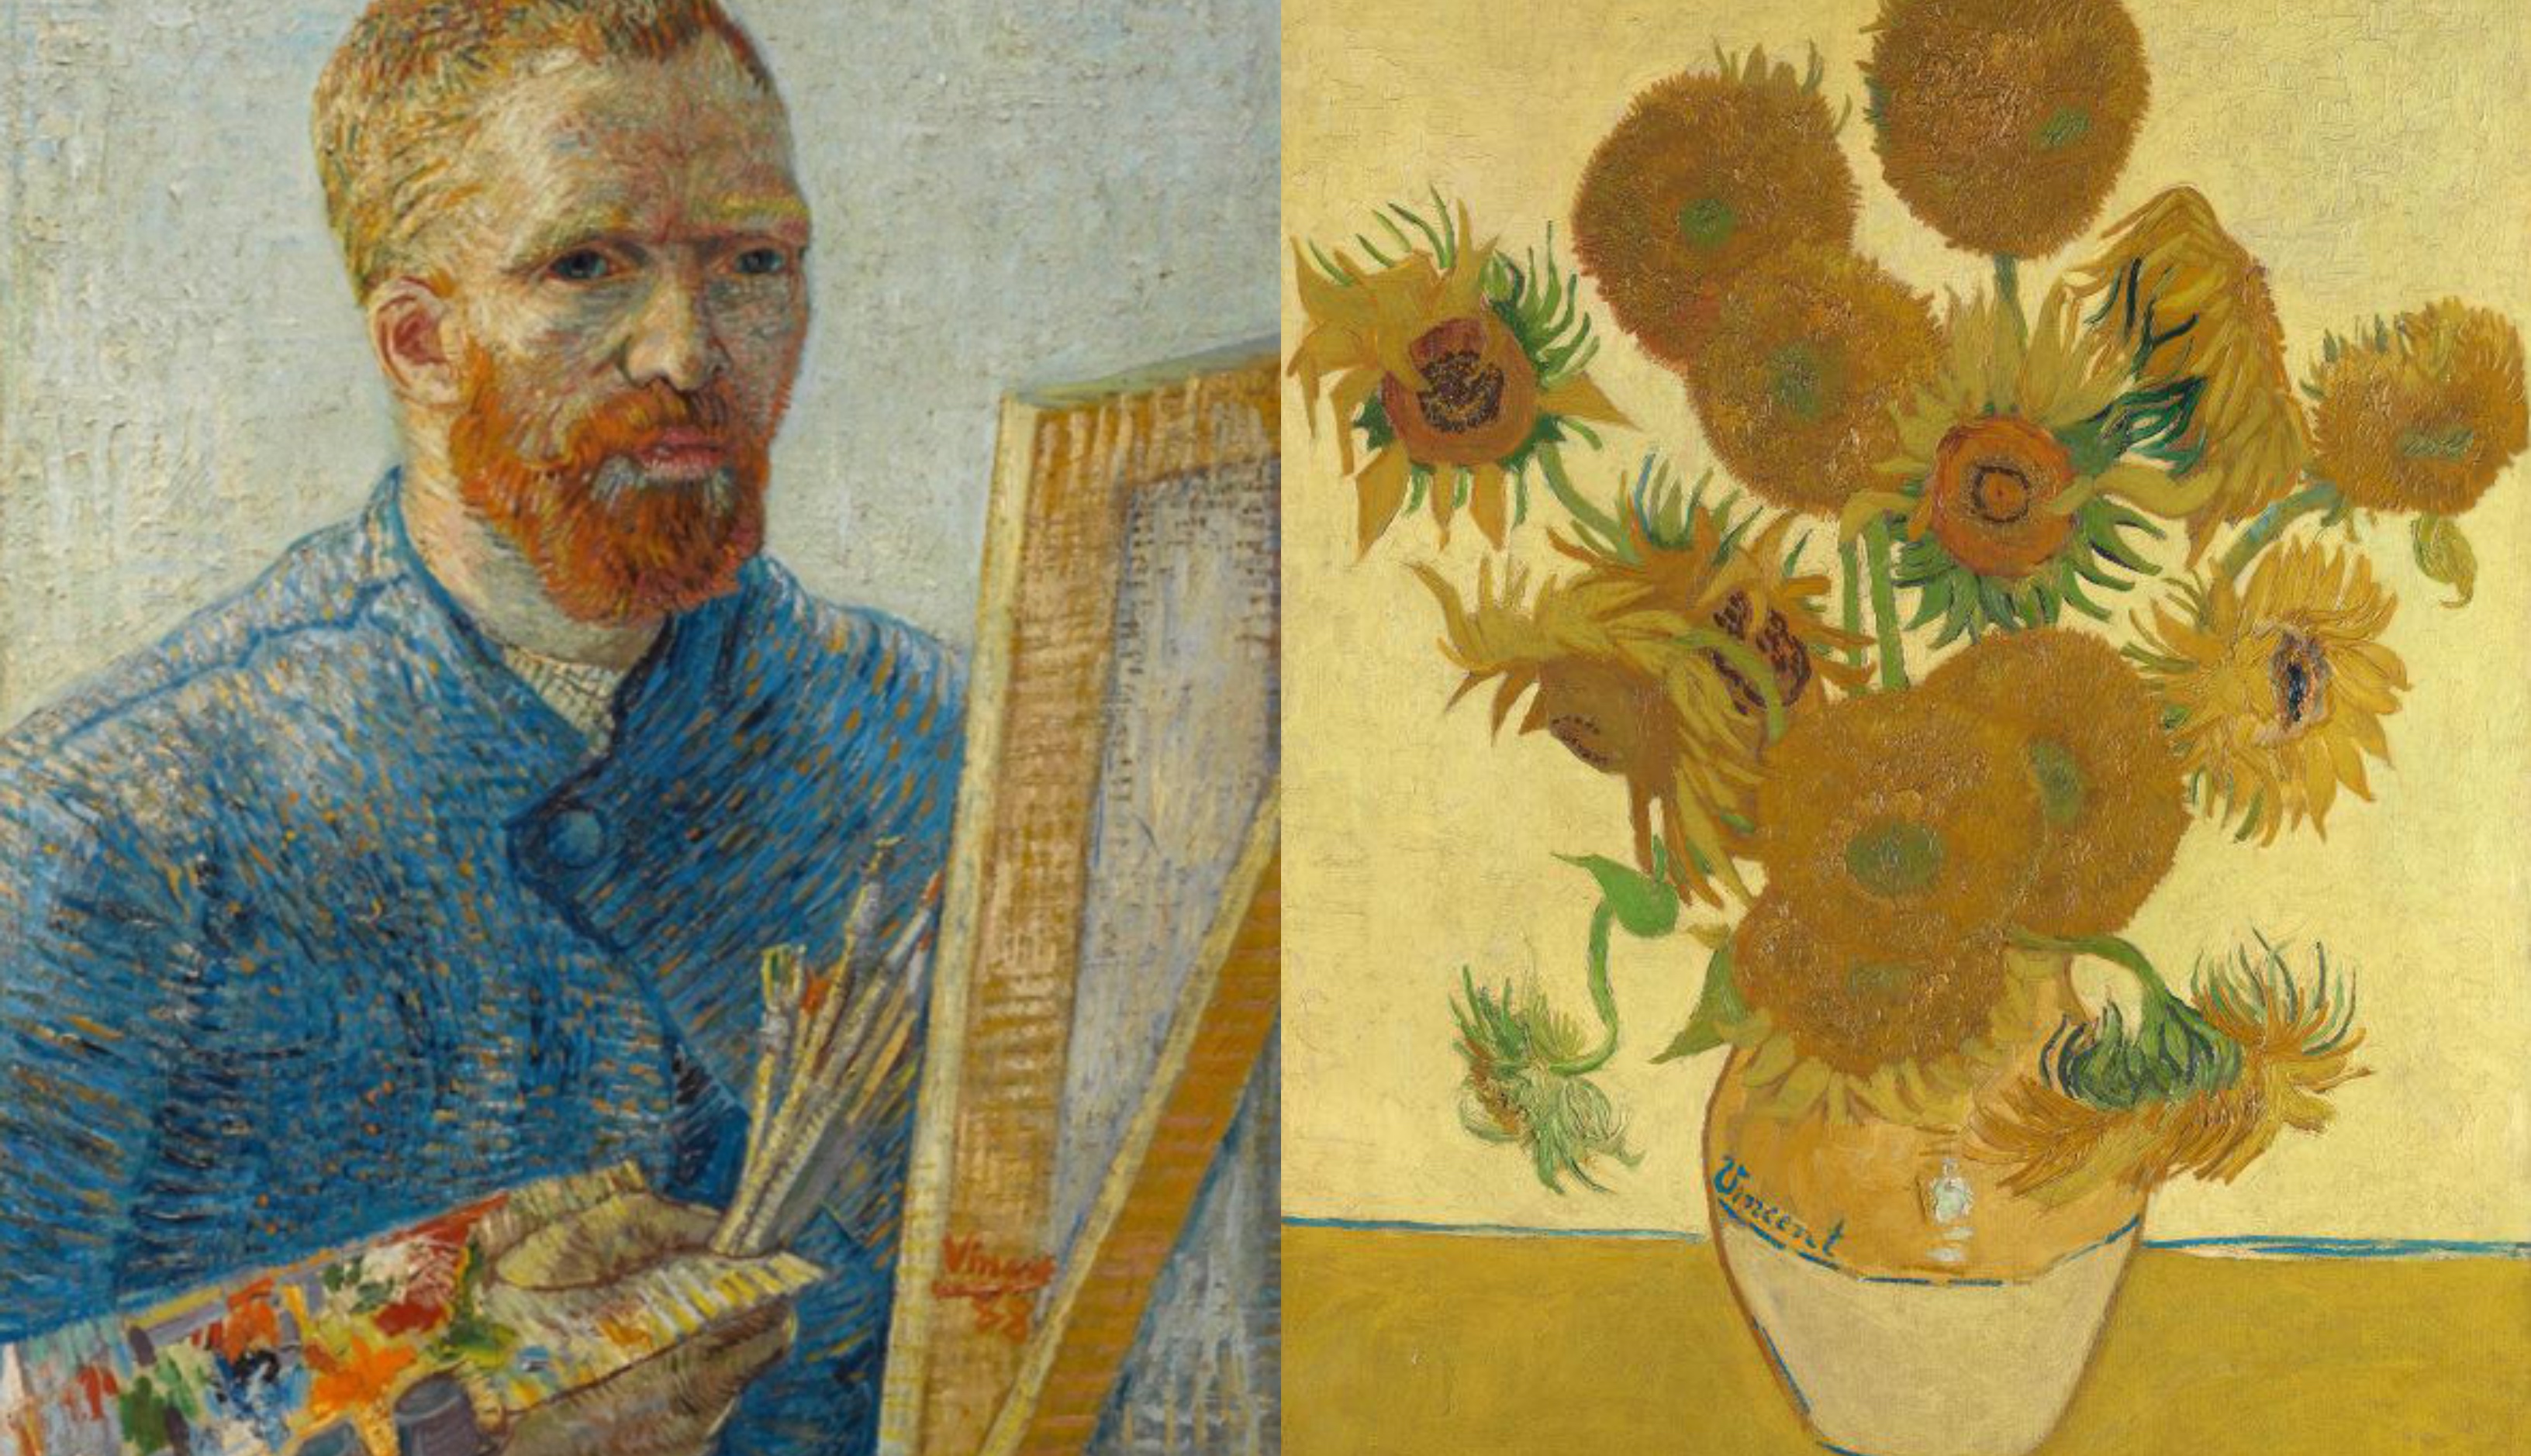 梵高的著名油畫《Sunflowers》明年將離開倫敦，去到三個不同地方的展覽展出。 